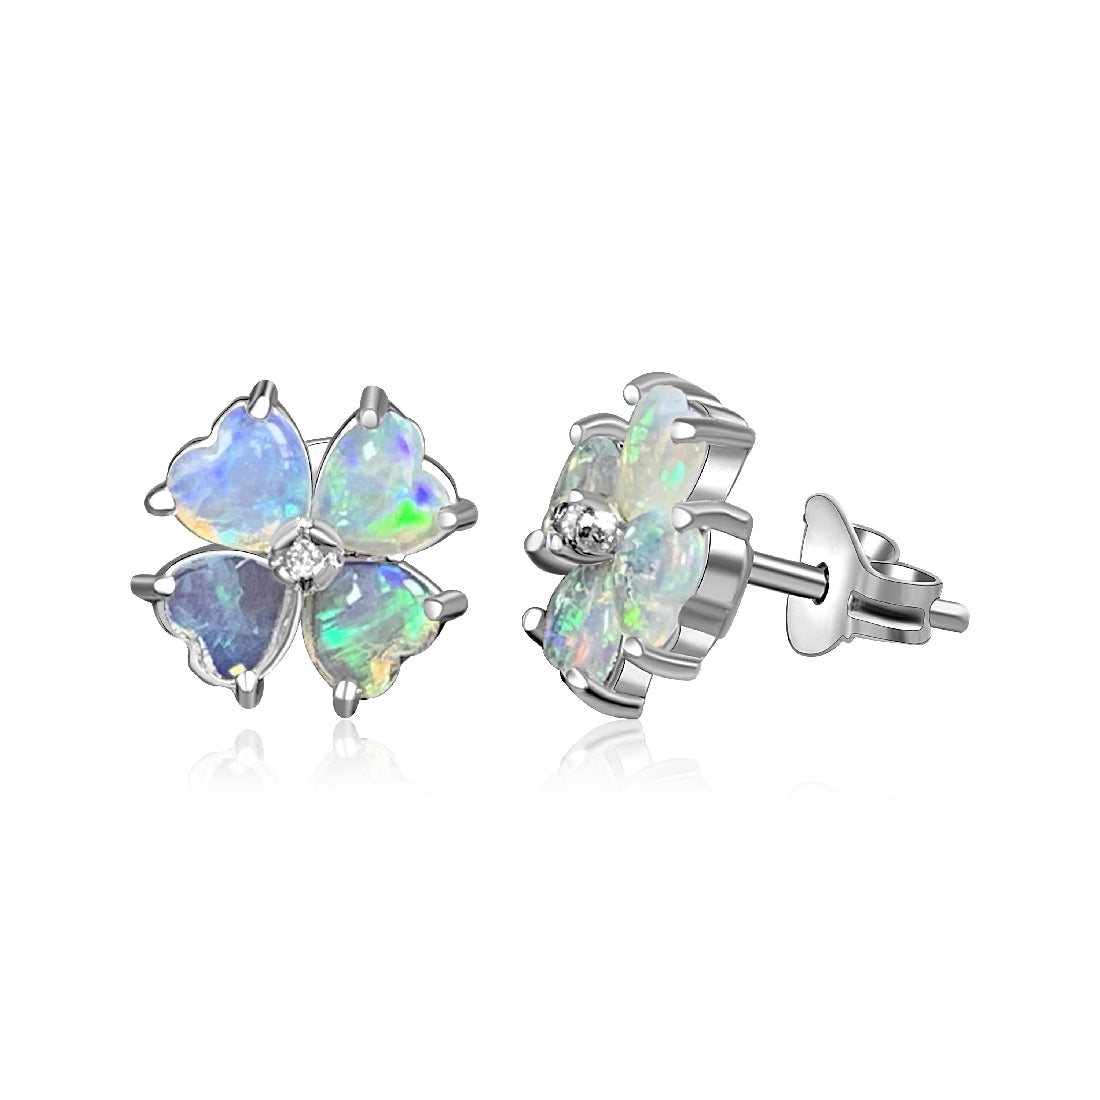 Sterling Silver Floral heart shape Crystal Opal earrings - Masterpiece Jewellery Opal & Gems Sydney Australia | Online Shop